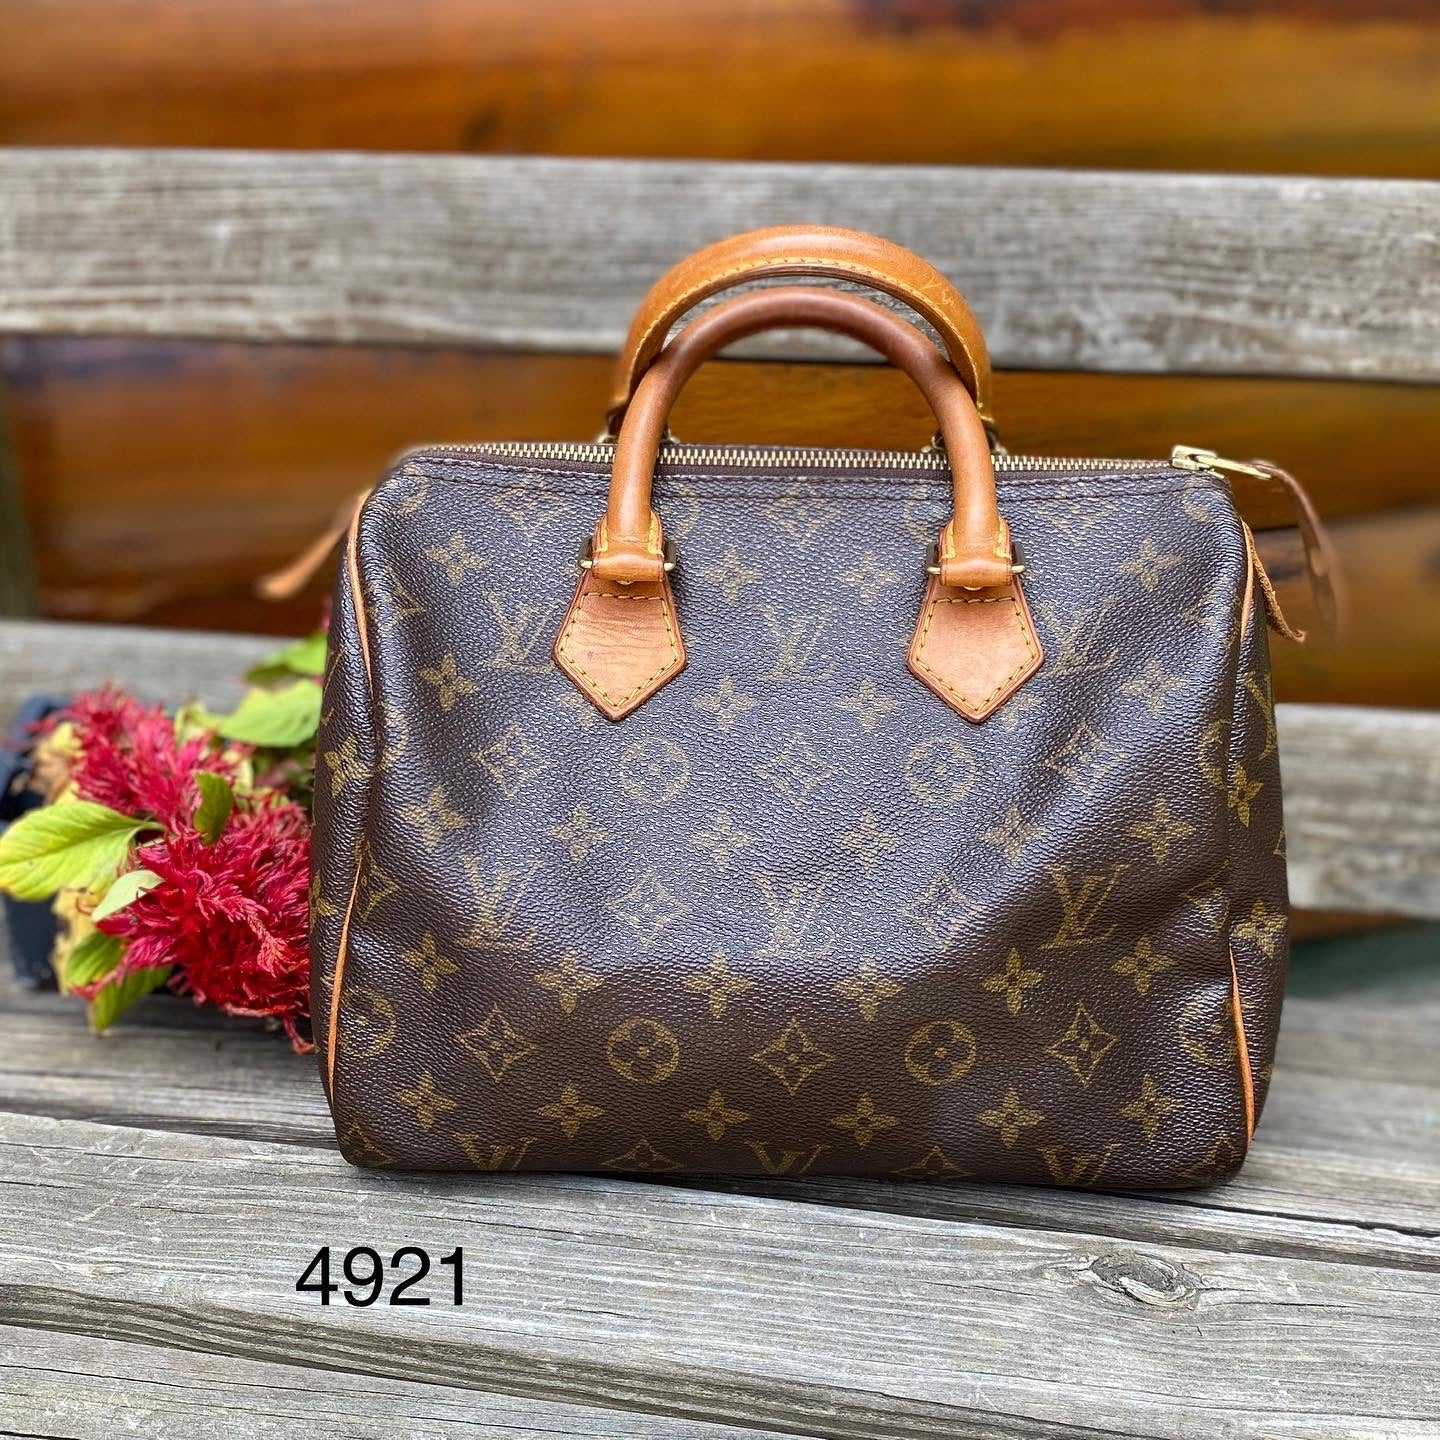 Preloved Louis Vuitton Speedy 25 Monogram Bag SP0978 060623 – KimmieBBags  LLC